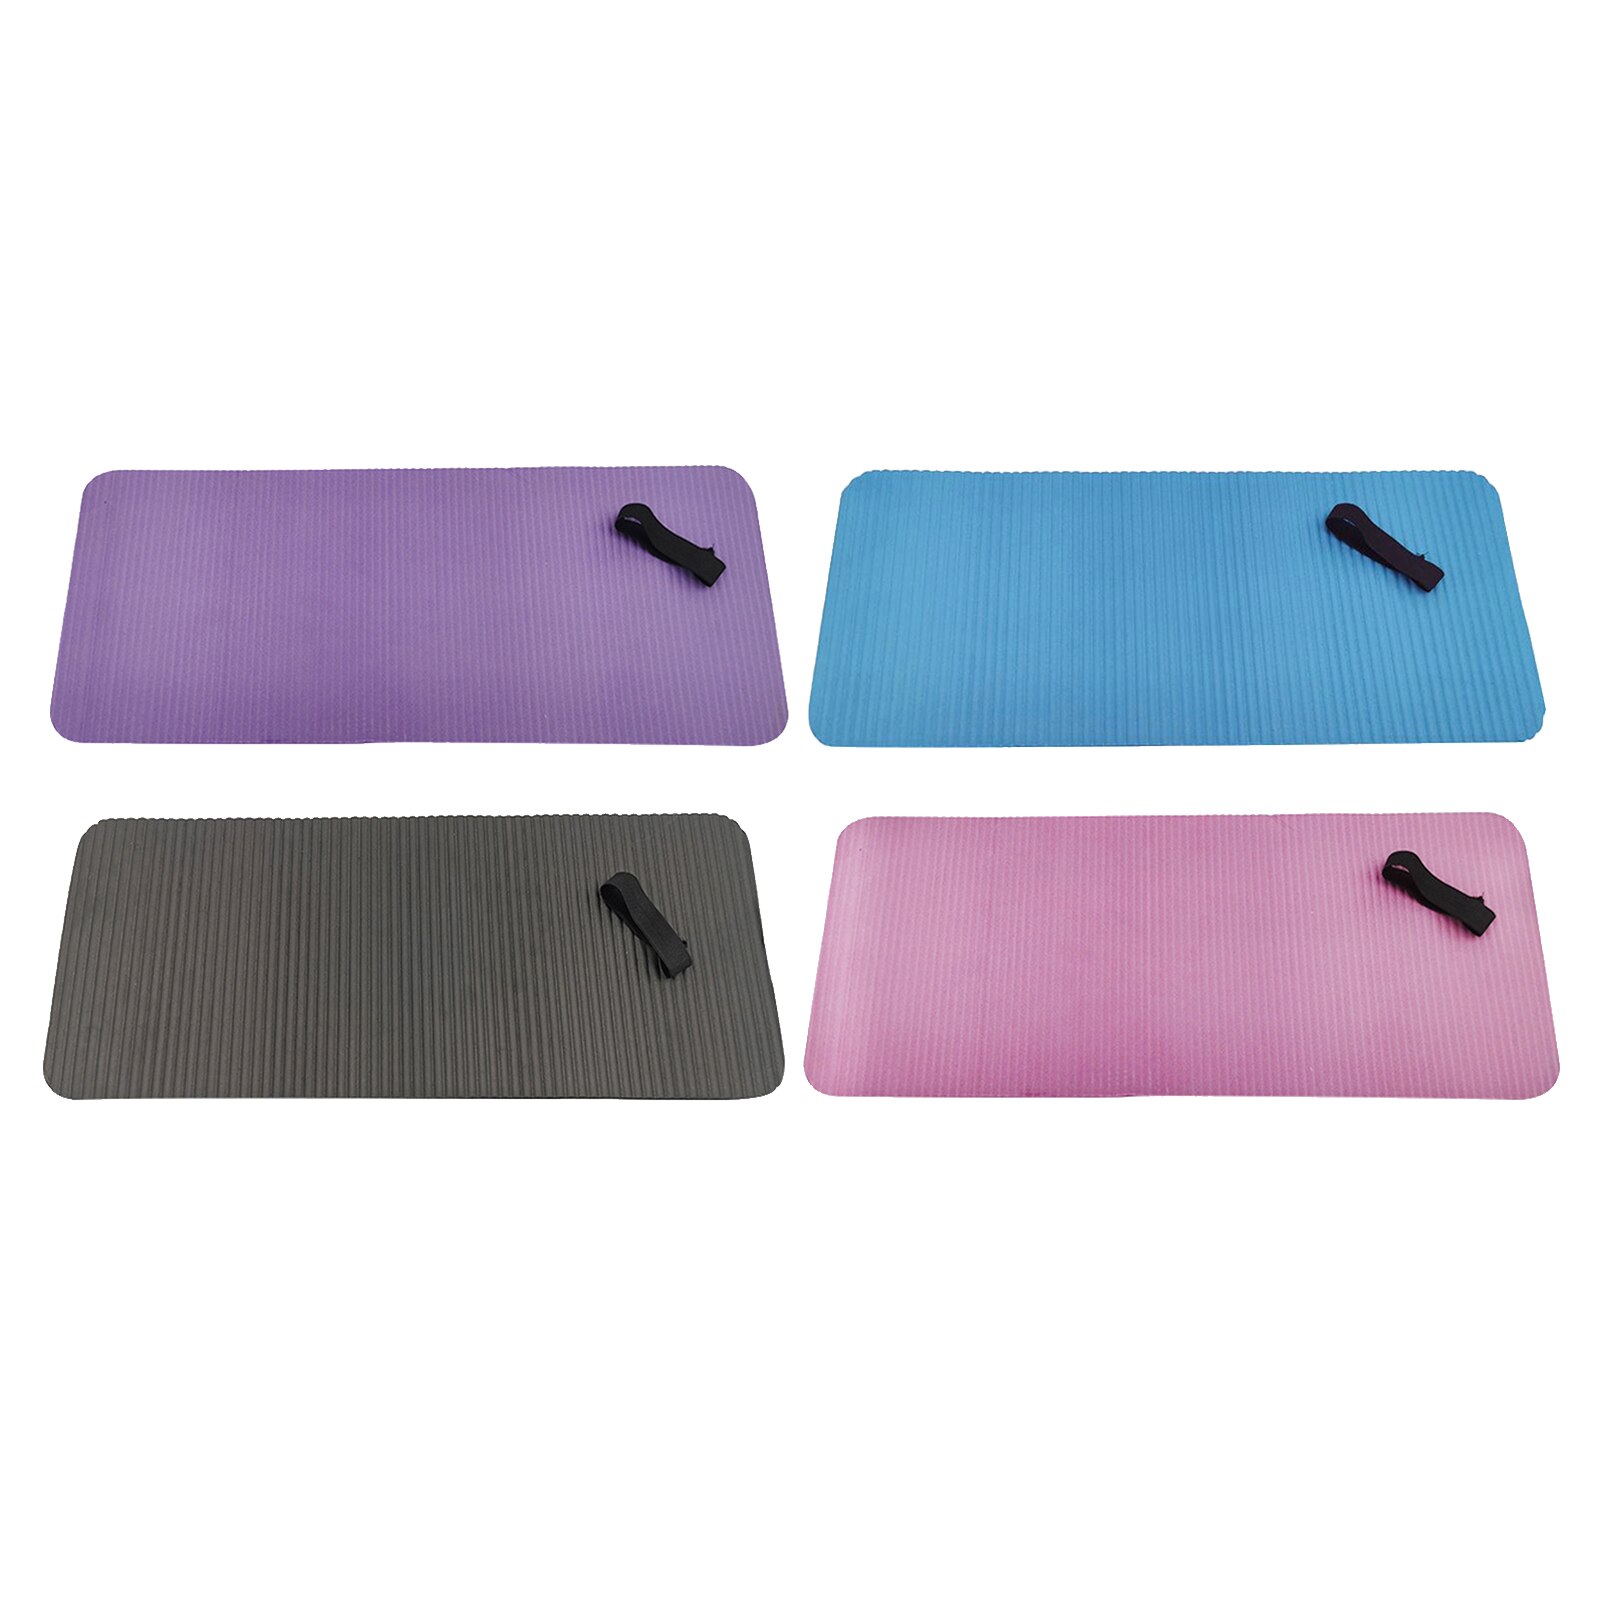 Yoga Knie Pad - Compact Oefening Pad Voor Knie, Elleboog En Pols Comfort, 24X10X0.6 Inch